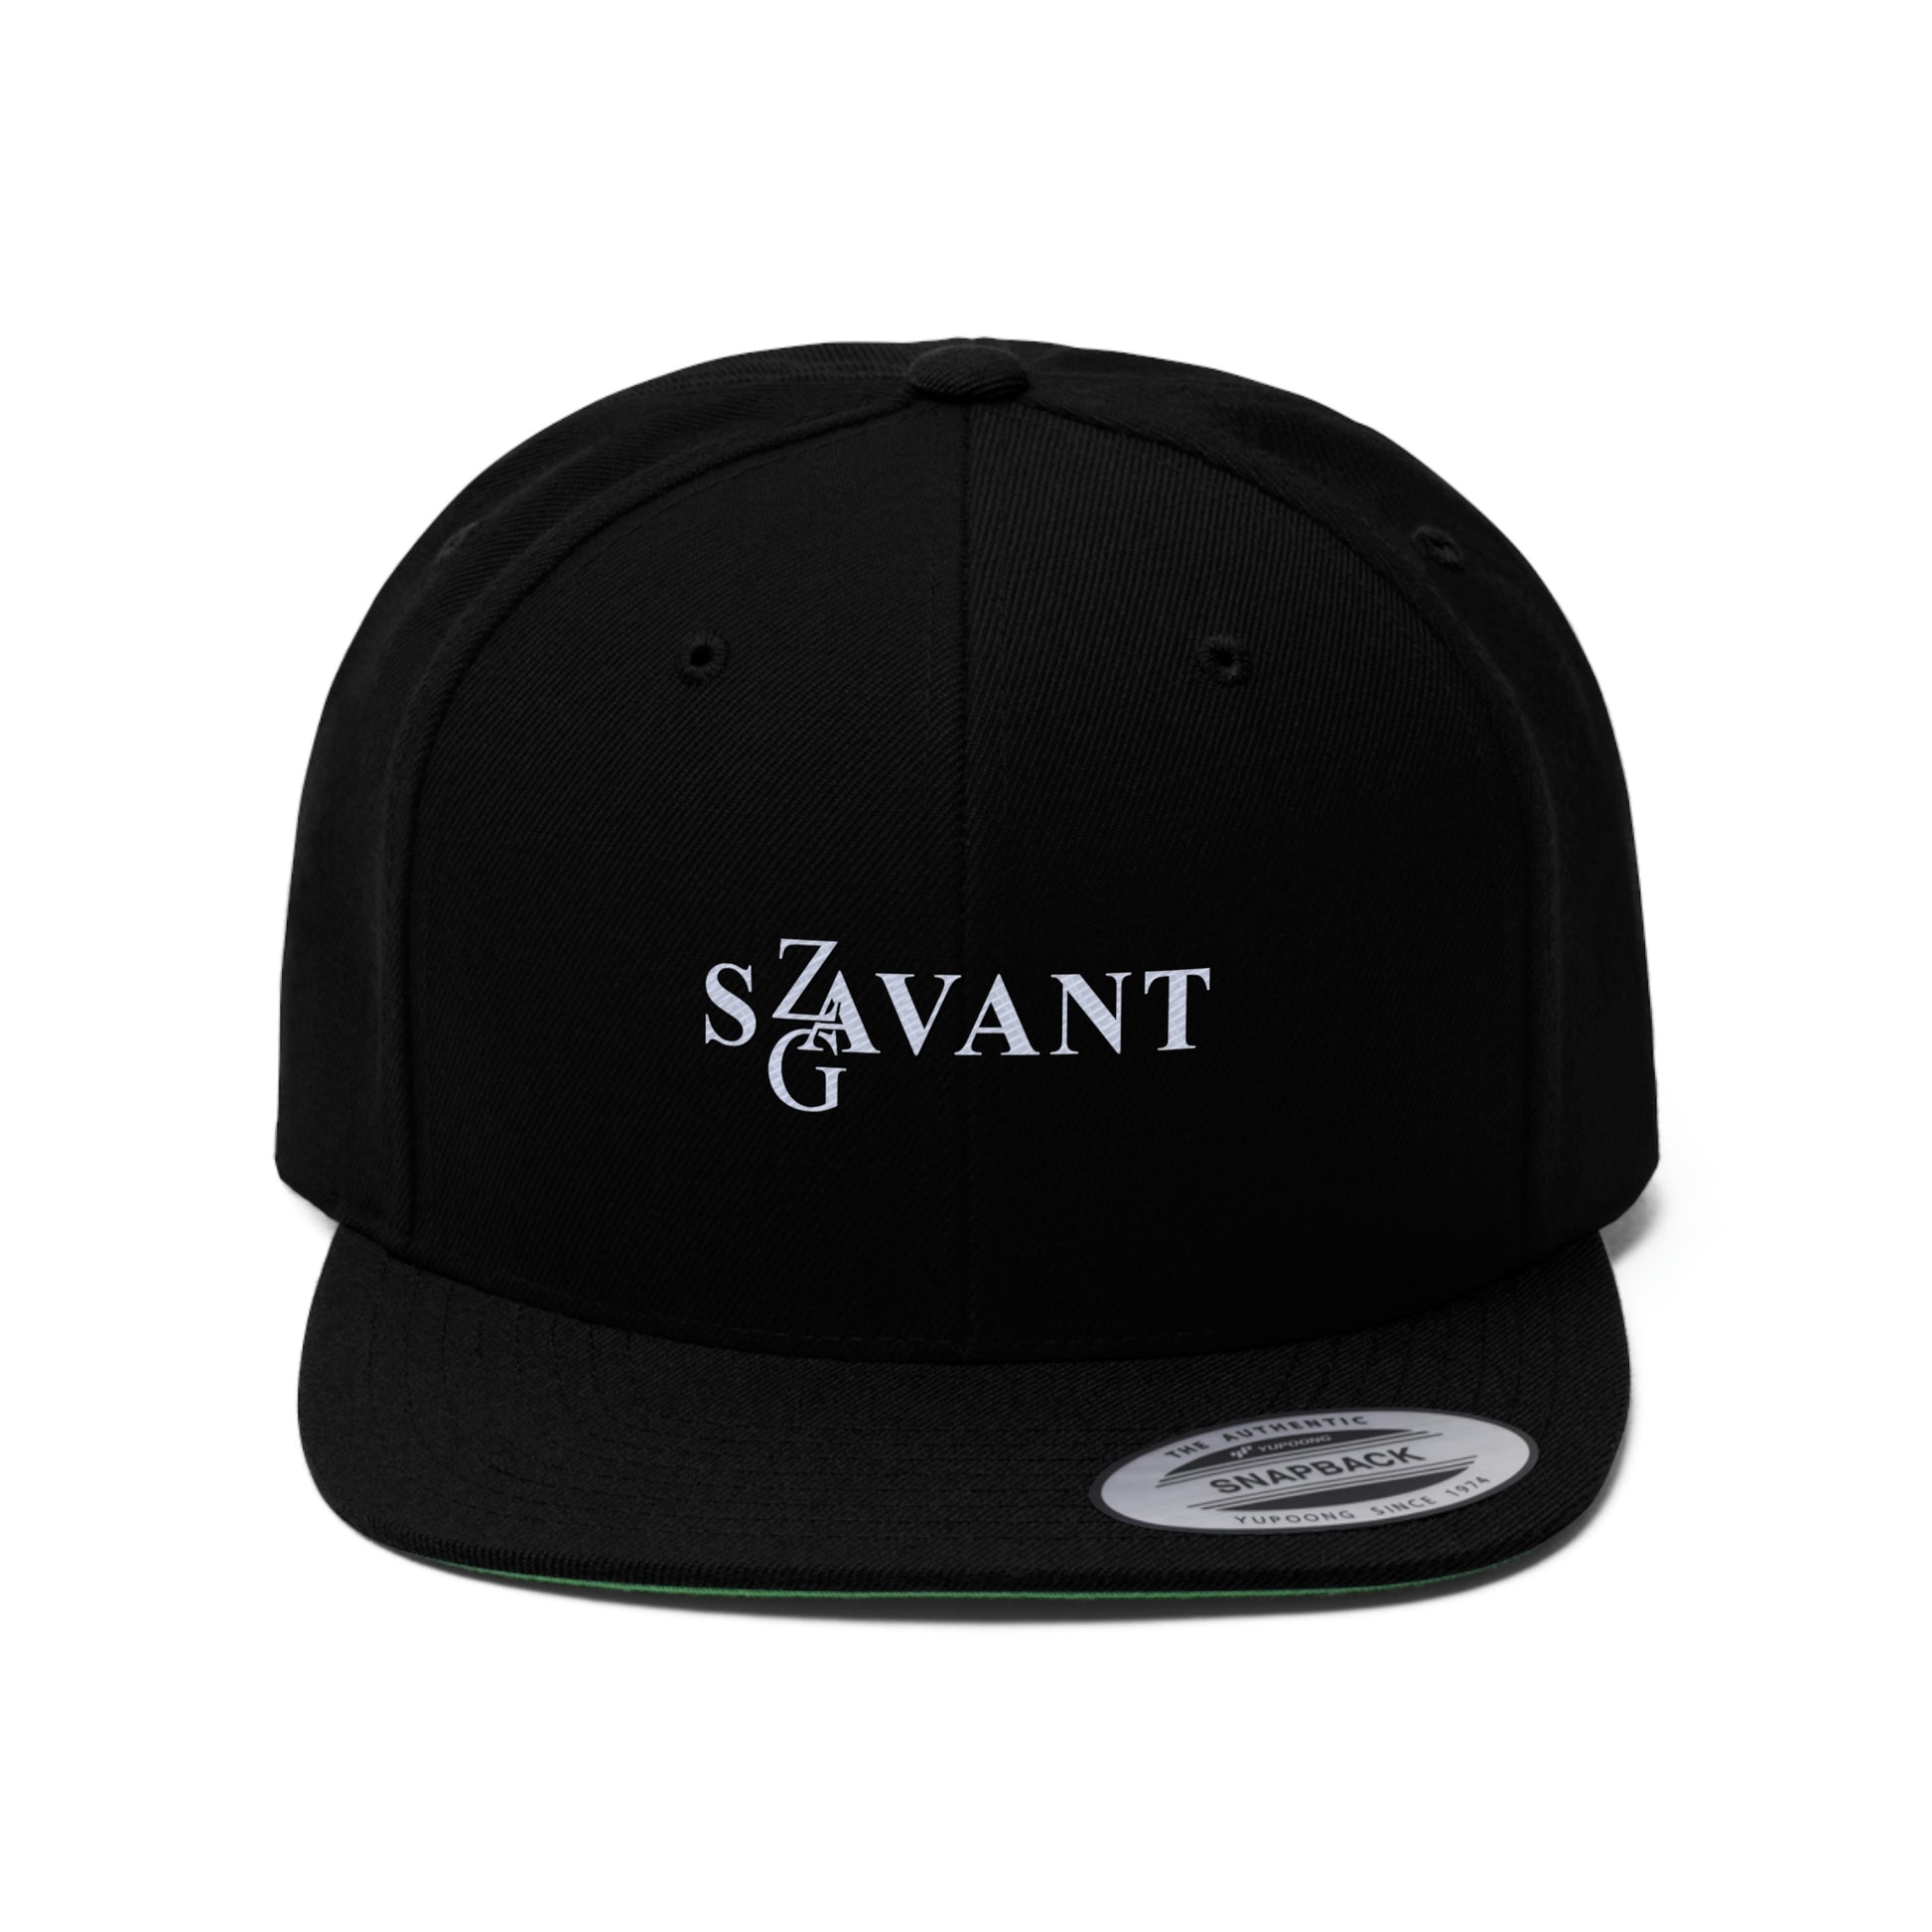 Zag Savant - Flat Bill Hat